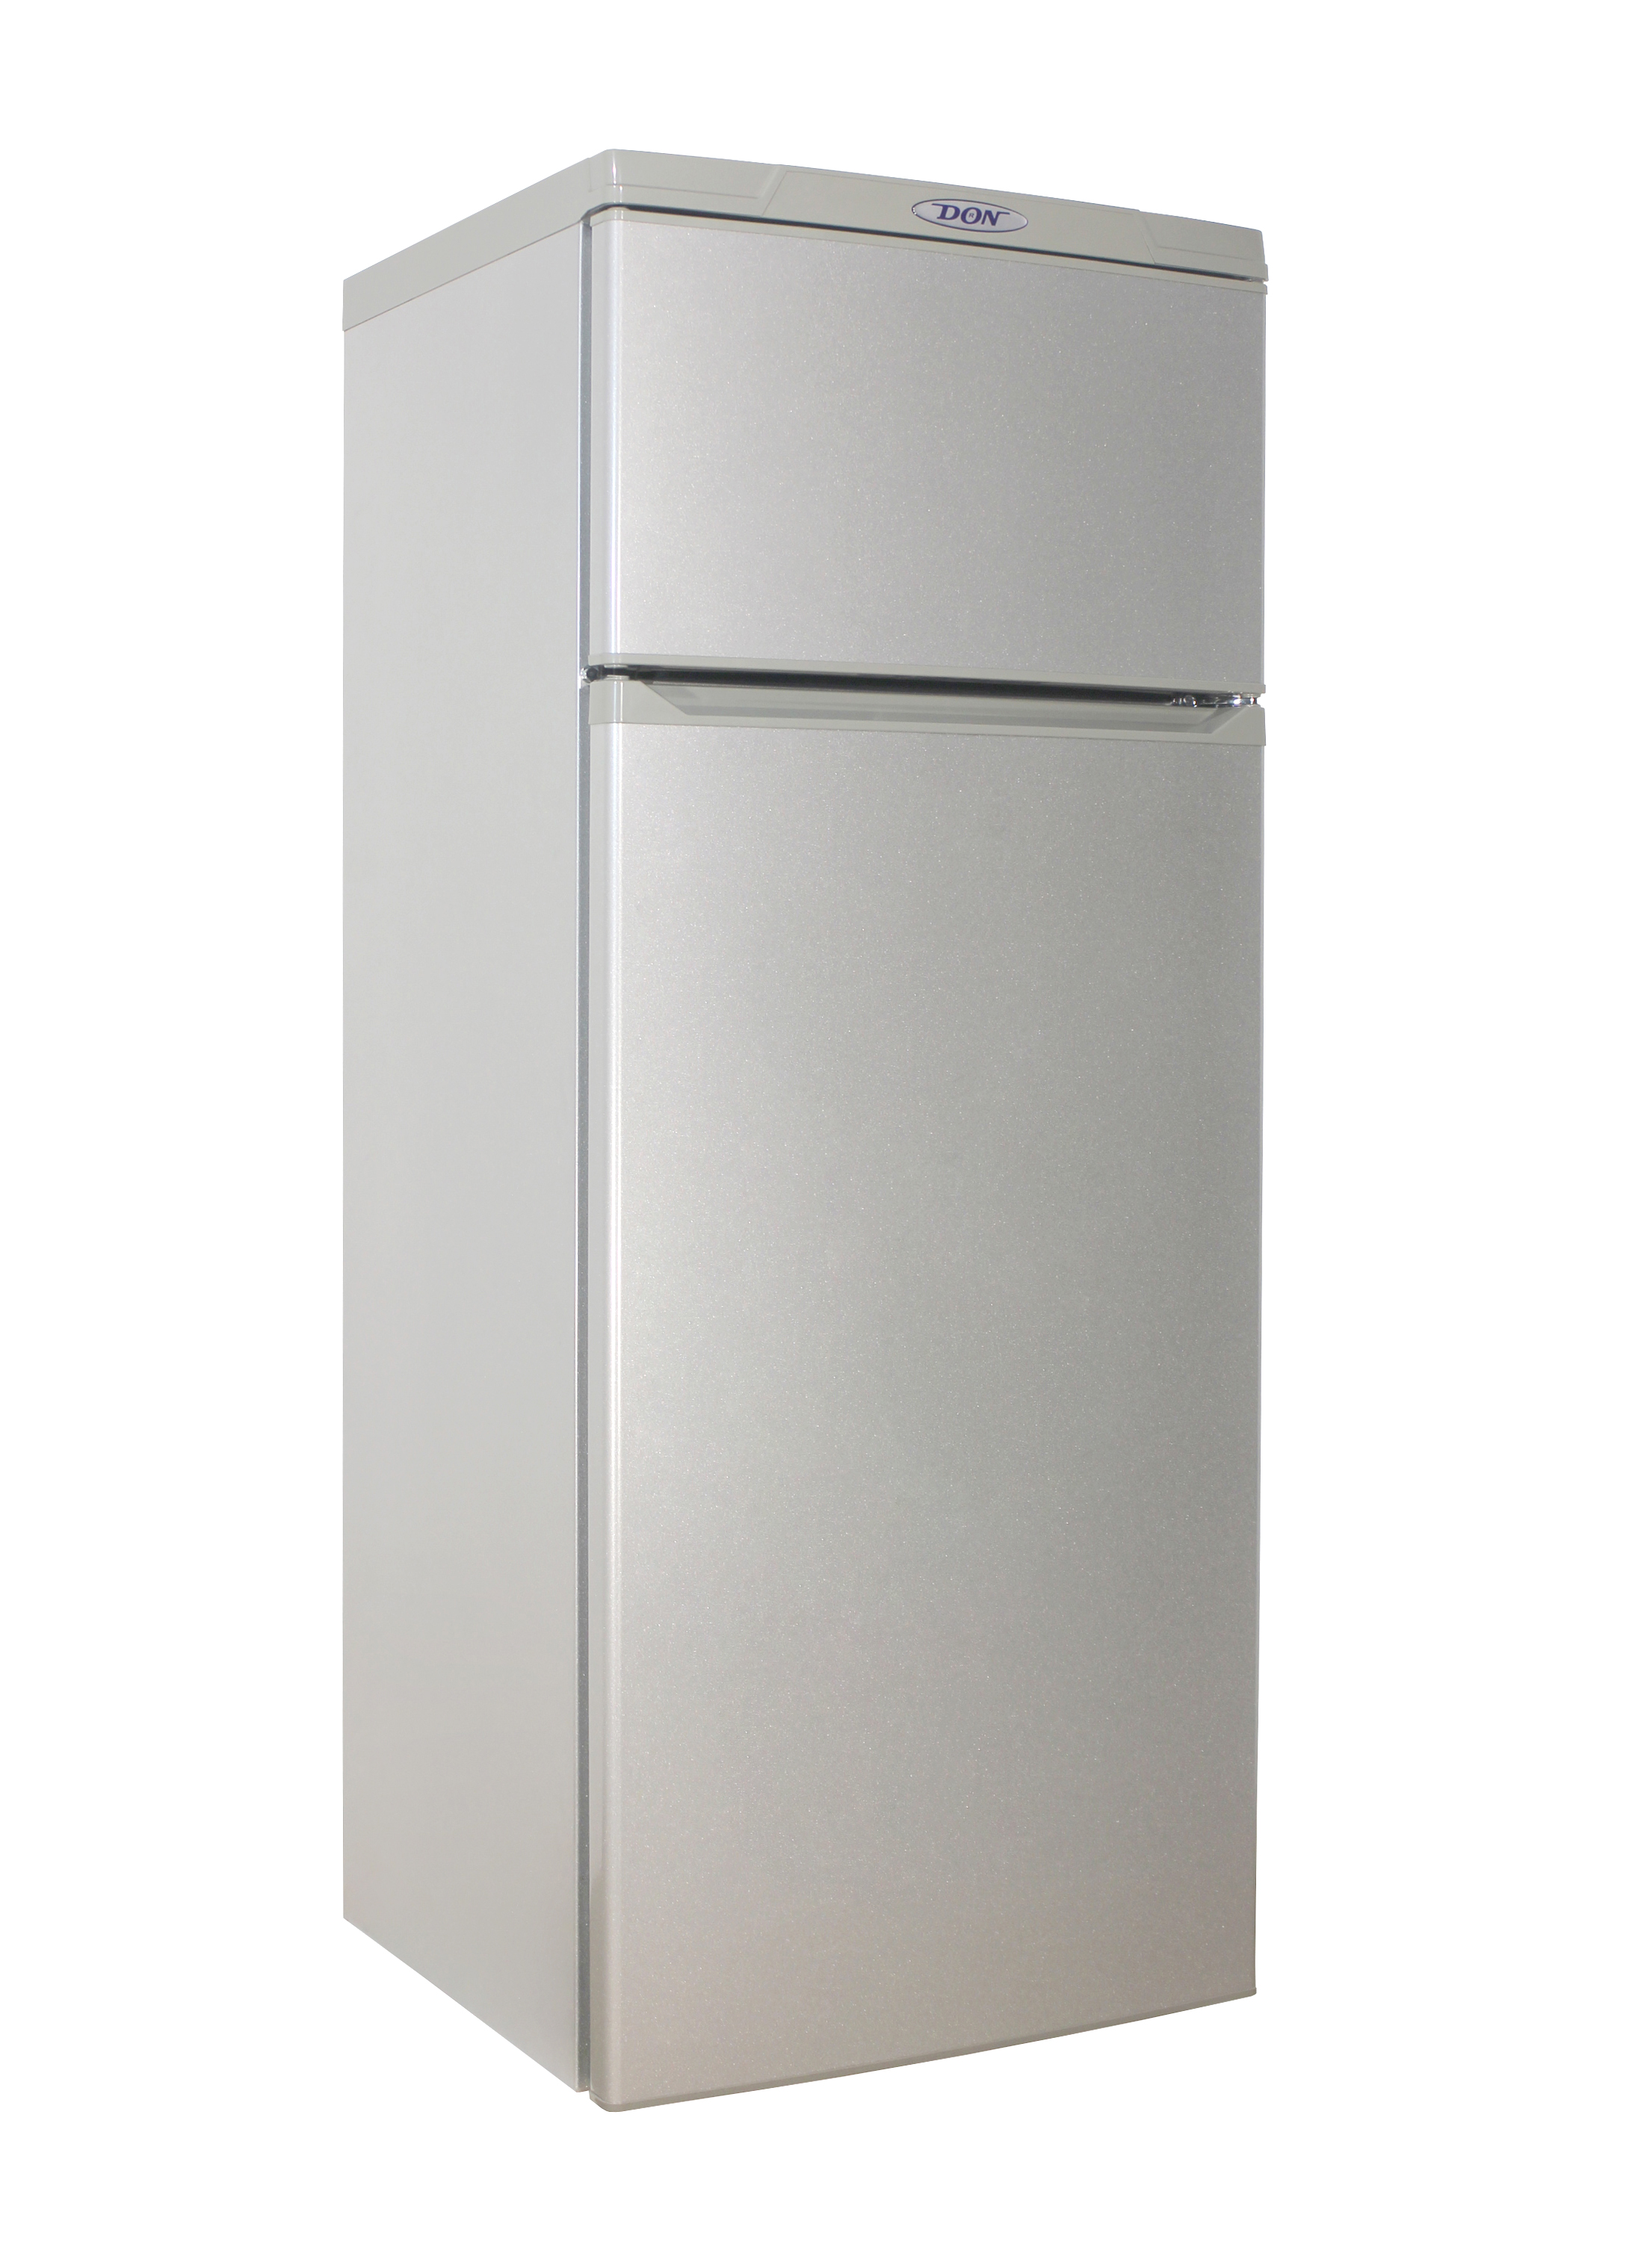 Холодильник двухкамерный купить в москве цена. Холодильник don r-226 005 mi. Холодильник don r-226 mi. Don холодильник don r-216 mi. Холодильник двухкамерный don r-216 mi.